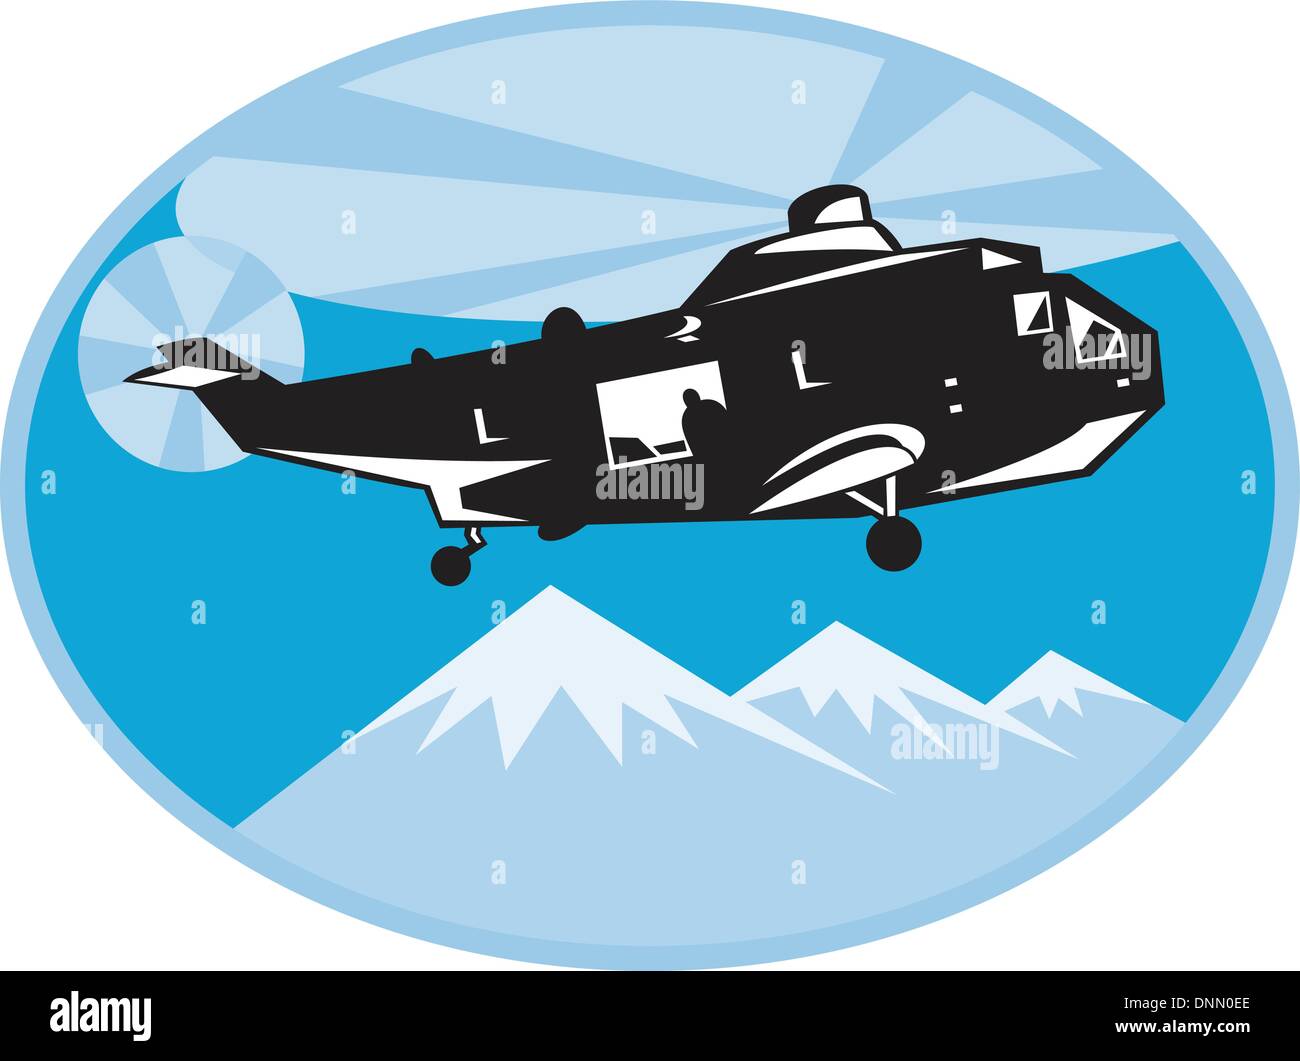 Illustration für ein Hubschrauber Hubschrauber Such- und Rettungsaktionen mit Bergen im Hintergrund im Inneren Ellipse getan im retro-Stil Stock Vektor